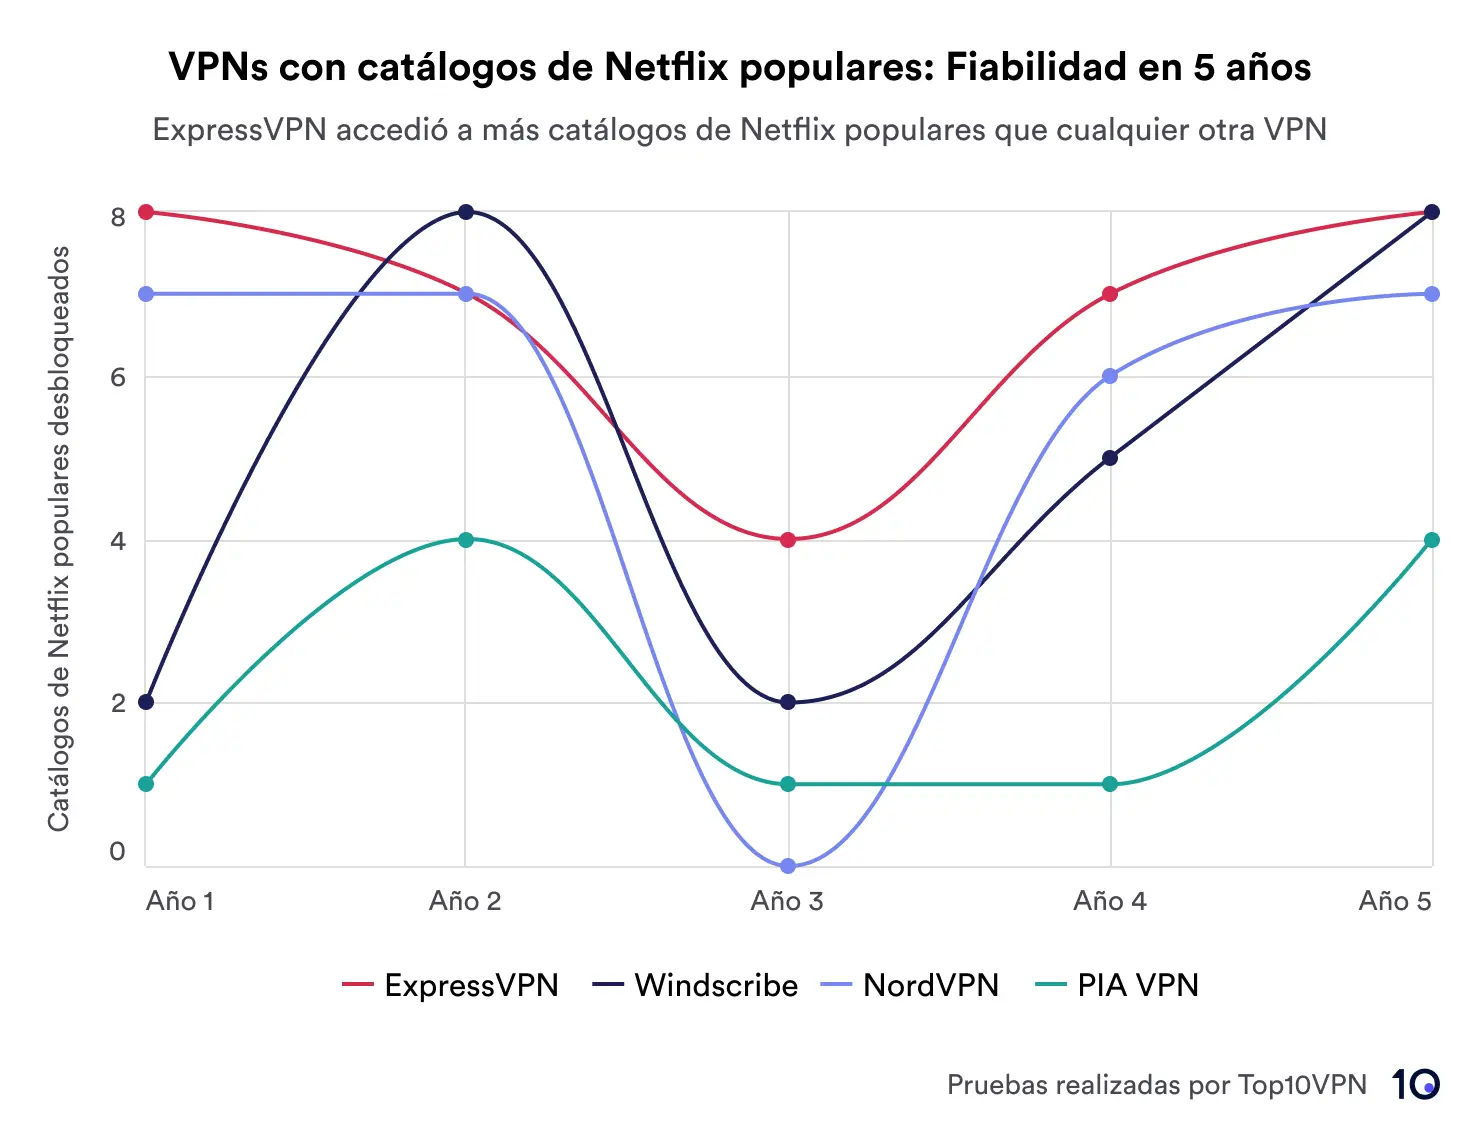 Un gráfico de líneas que muestra el rendimiento de cuatro VPN (ExpressVPN, Windscribe, NordVPN y PIA VPN) en el desbloqueo de regiones de Netflix durante cinco años. ExpressVPN lidera en fiabilidad.